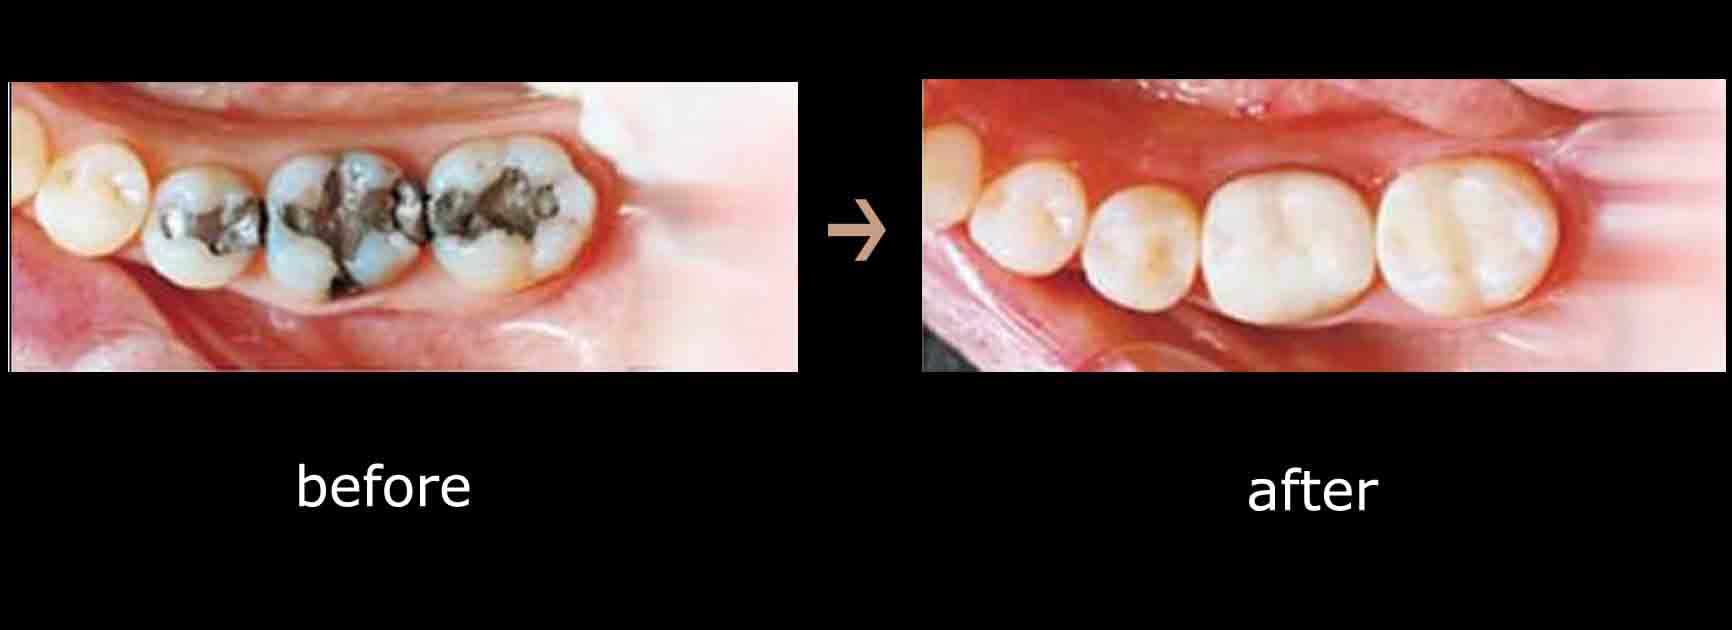 عکس قبل و بعد پر کردن دندان